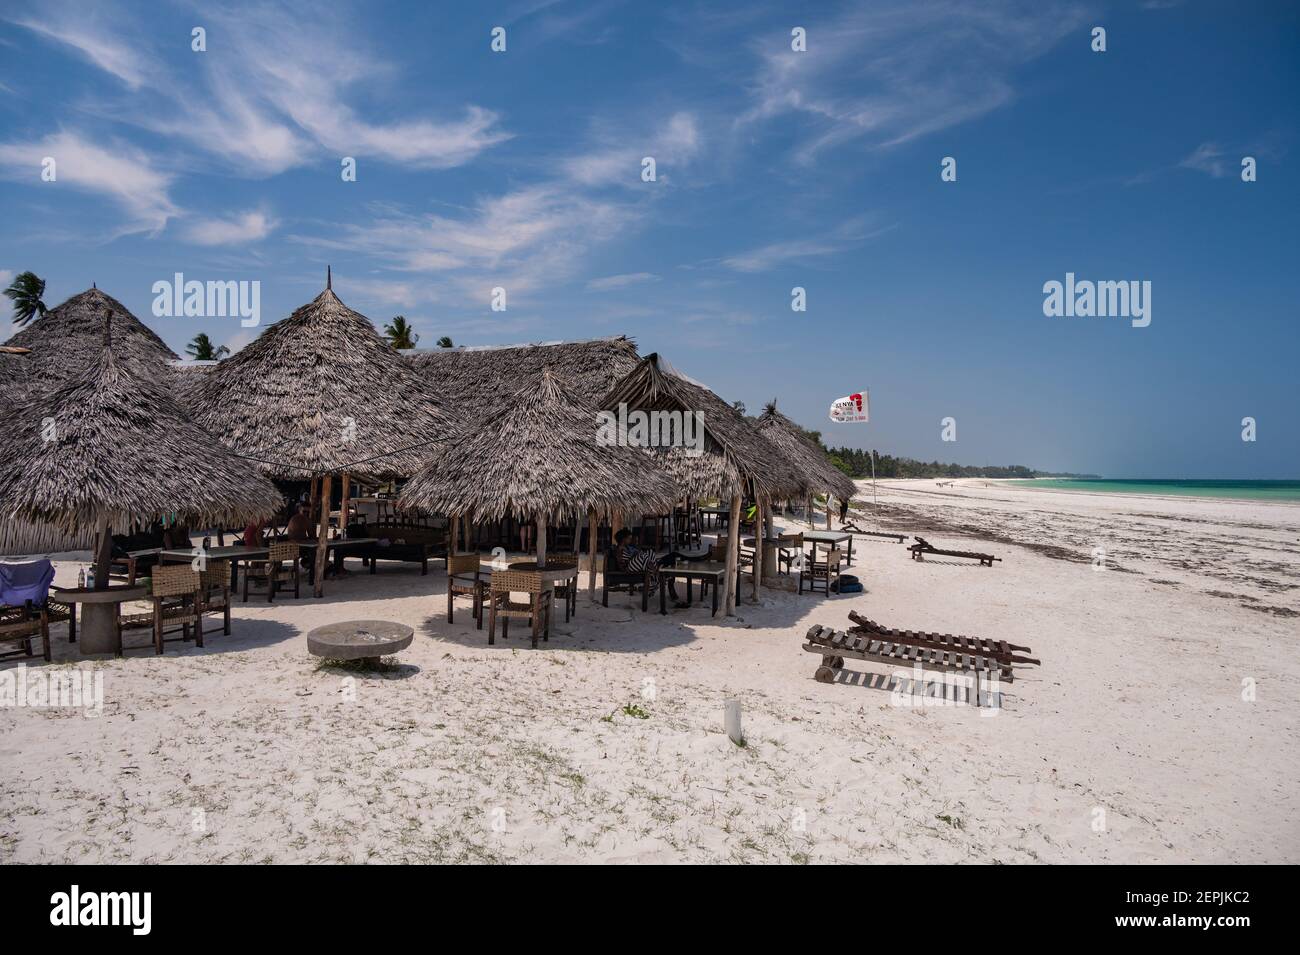 La gente se sentó en un bar de playa con vistas al océano Índico, Diani, Kenia, África del este Foto de stock